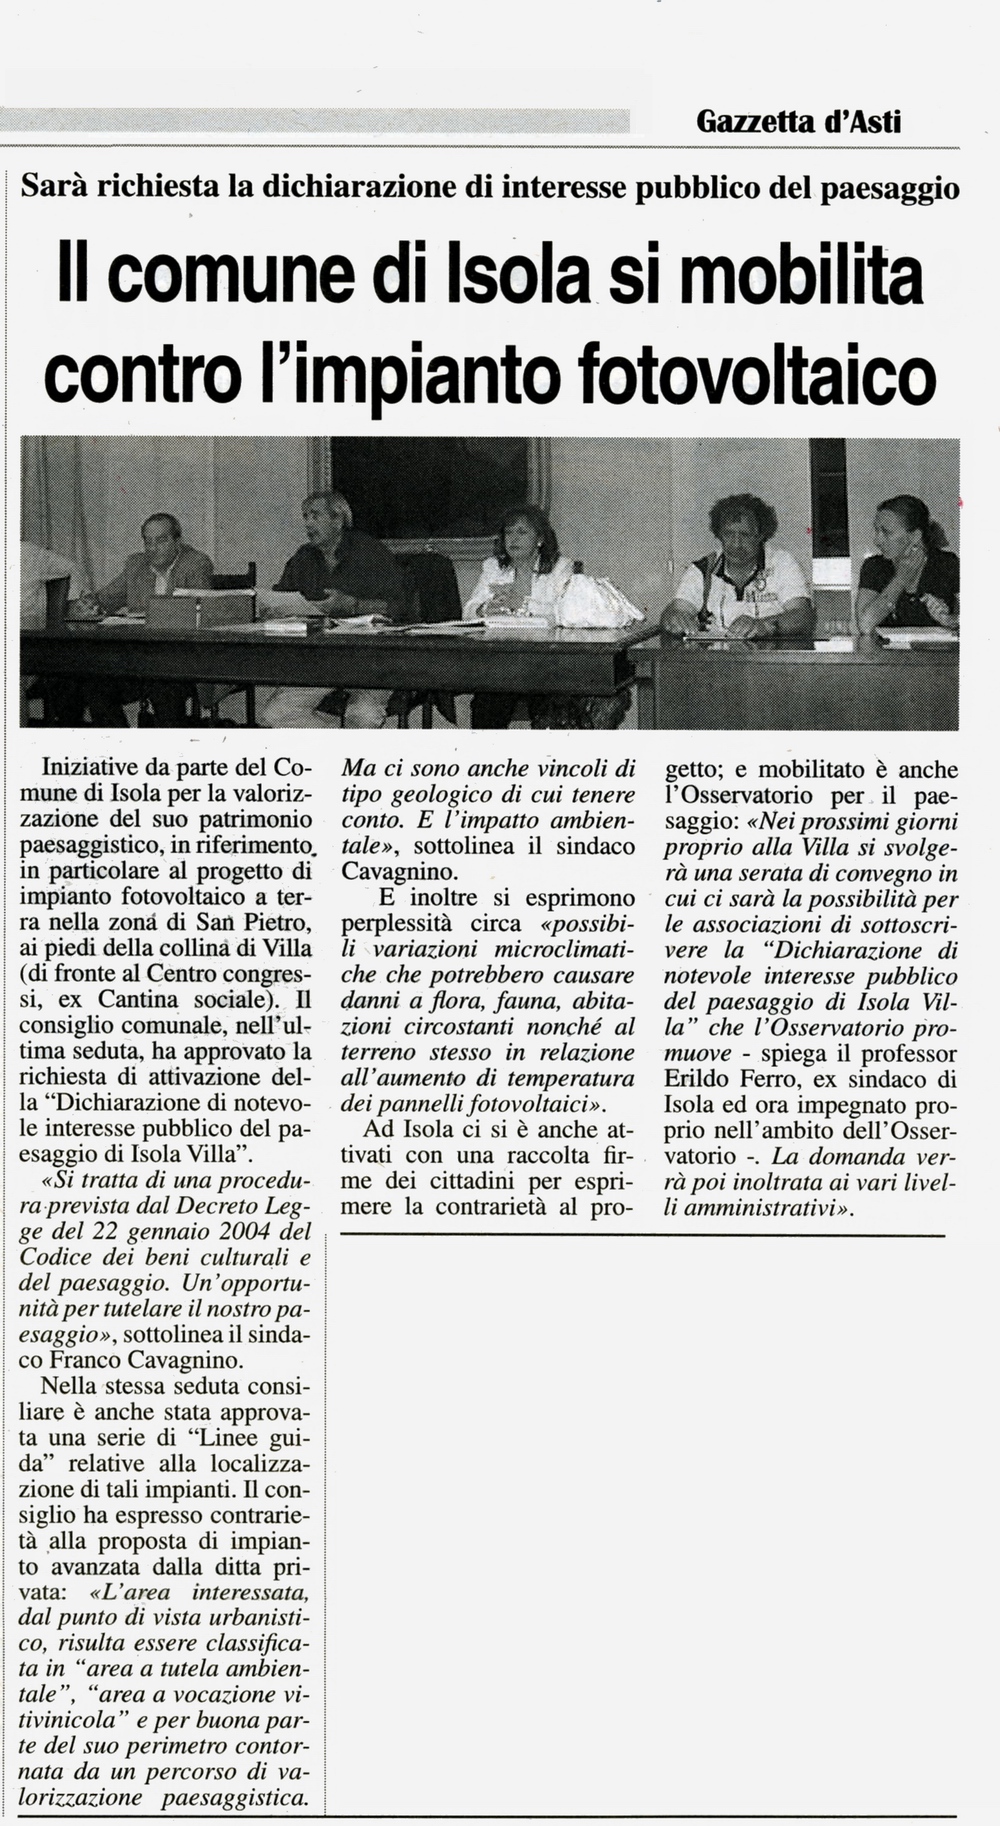 Rassegna stampa - Dichiarazione di notevole interesse pubblico del paesaggio di Isola Villa.- Gazzetta d'Asti (Venerdì 11 giugno 2010)